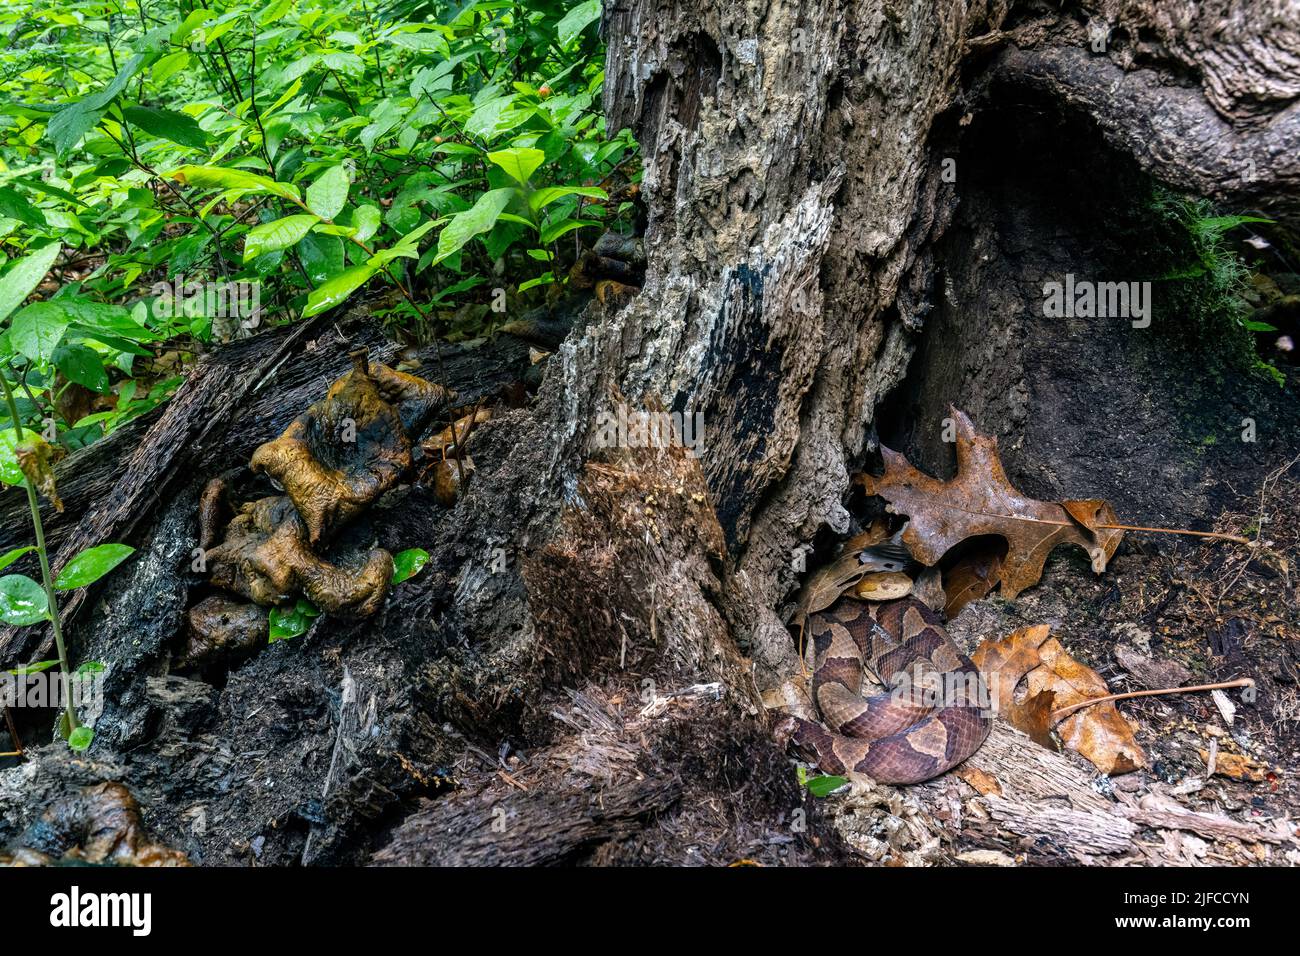 Coperhead oriental (Agkistrodon contortrix) escondido en el tocón de los árboles - Reserva Bracken, Brevard, Carolina del Norte, EE.UU Foto de stock